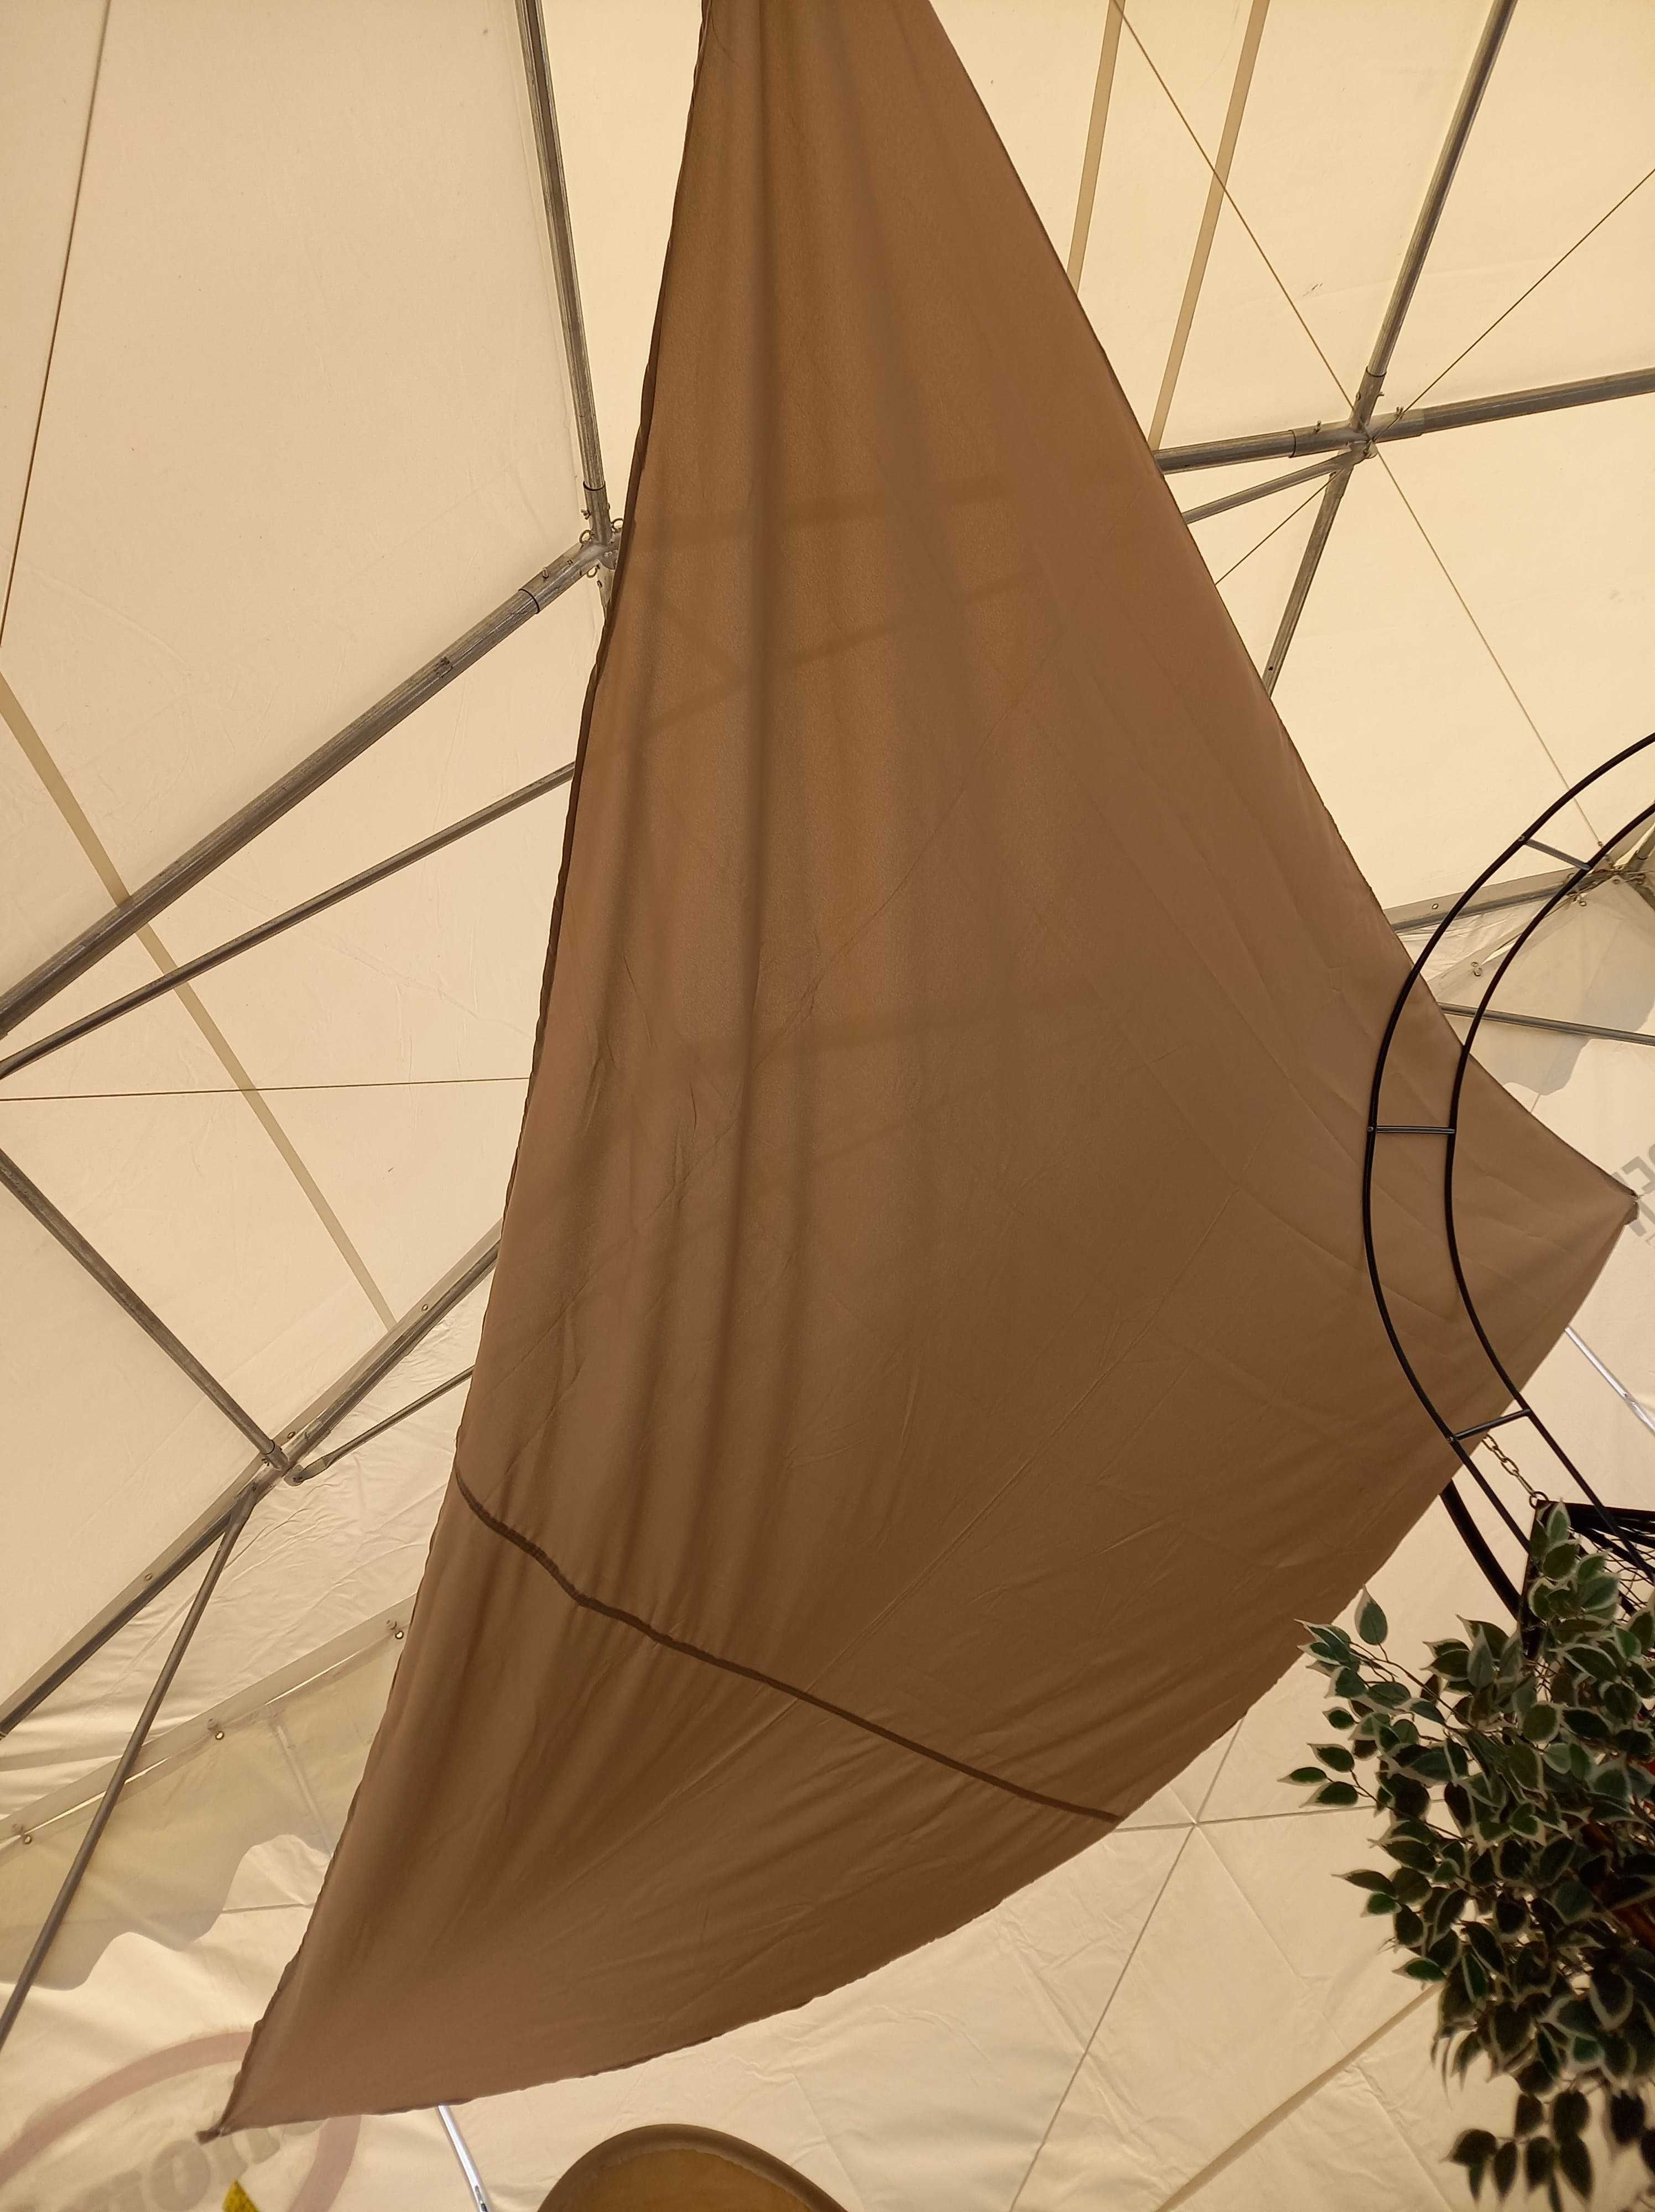 Żagiel beżowy 5x5x5 m przeciwsłoneczny ogrodowy trójkąt parasol